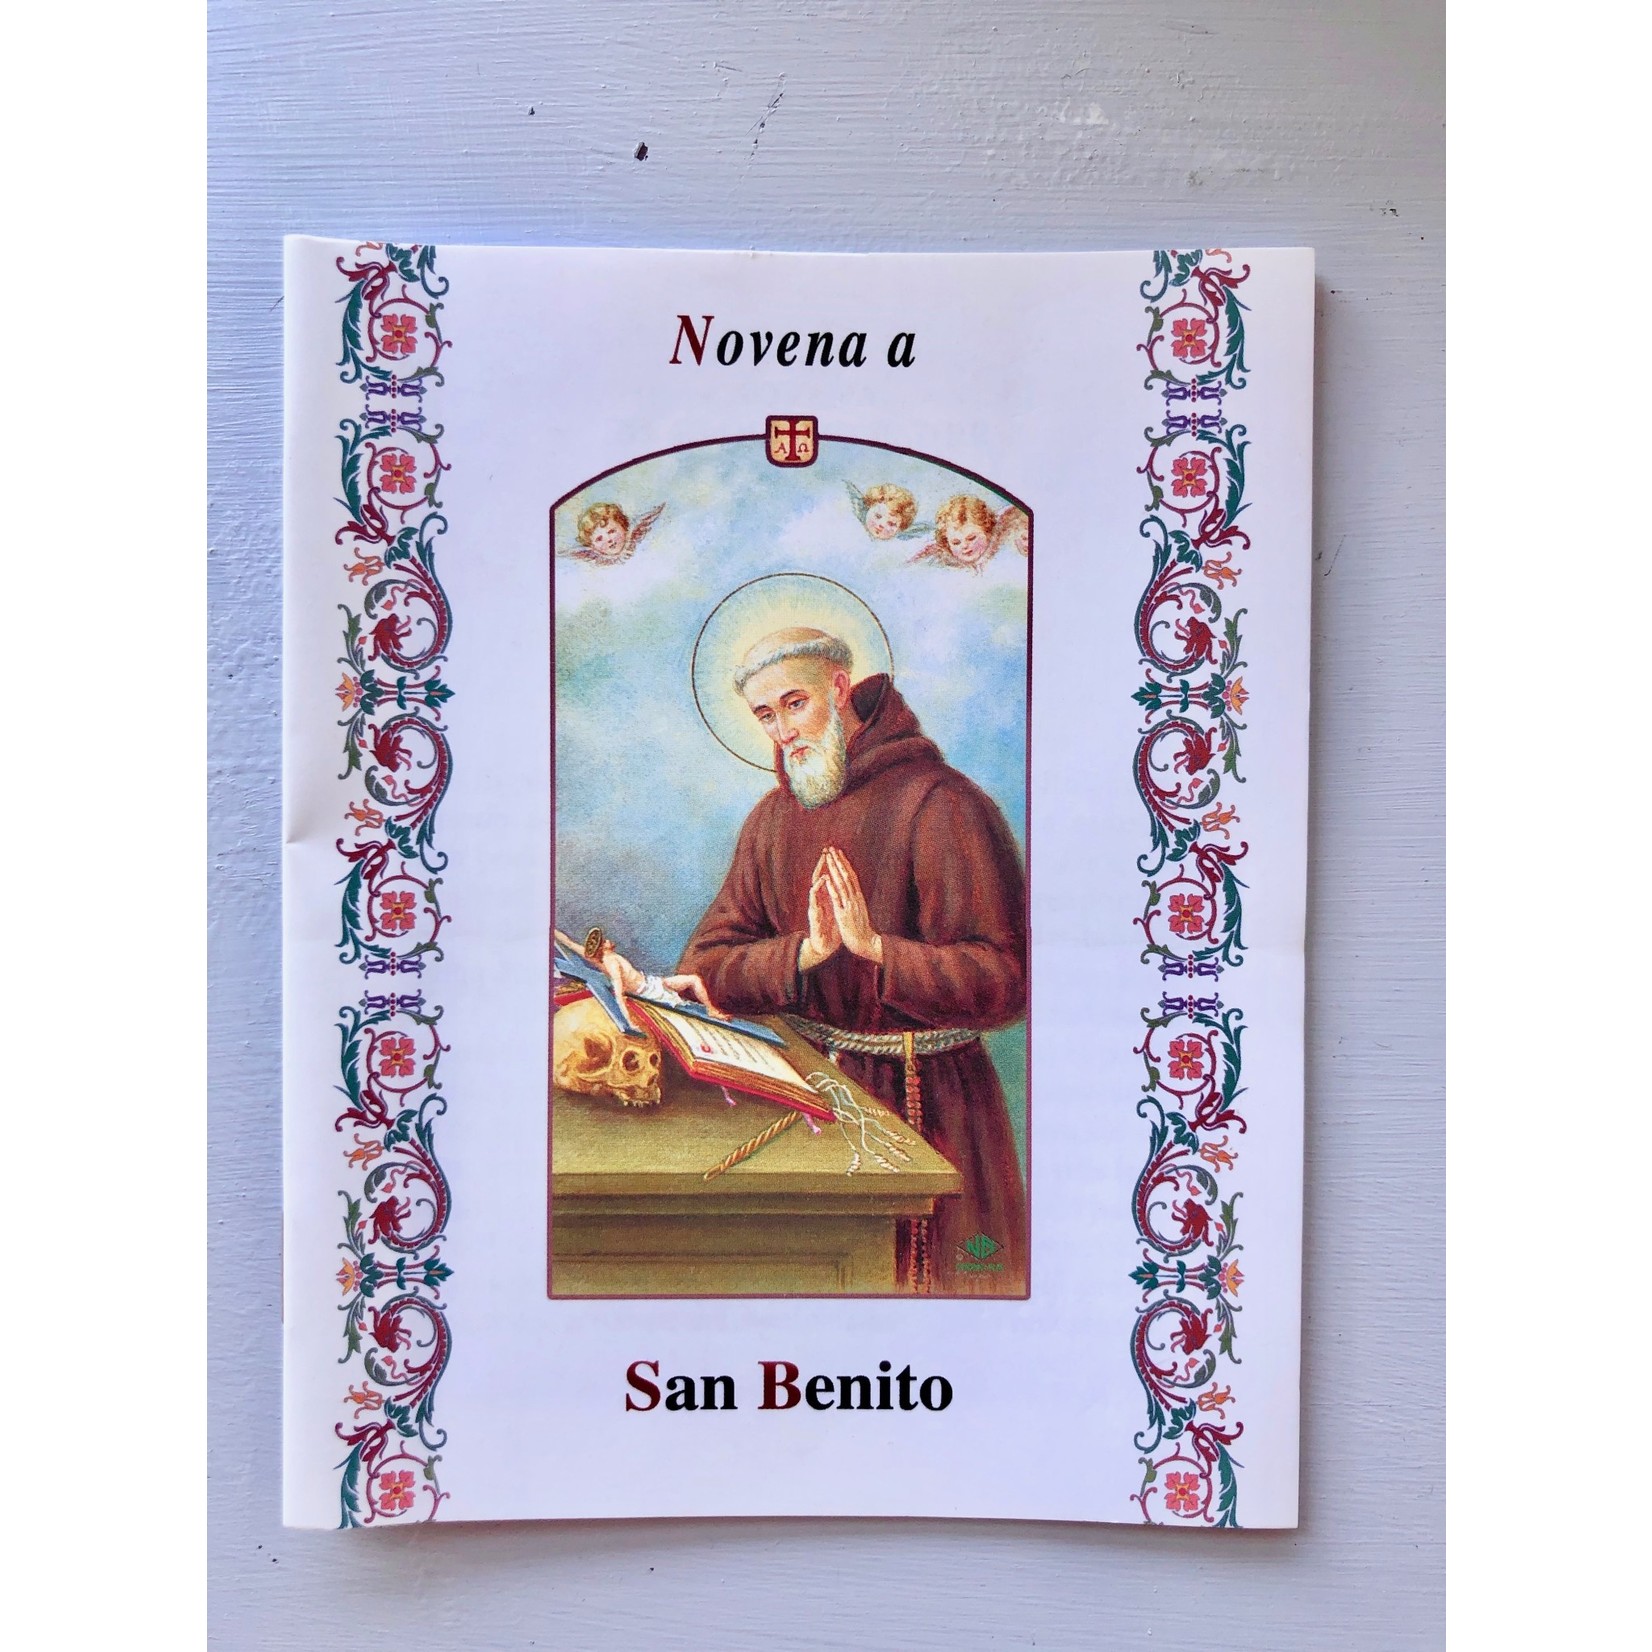 Novena a San Benito (Spanish)